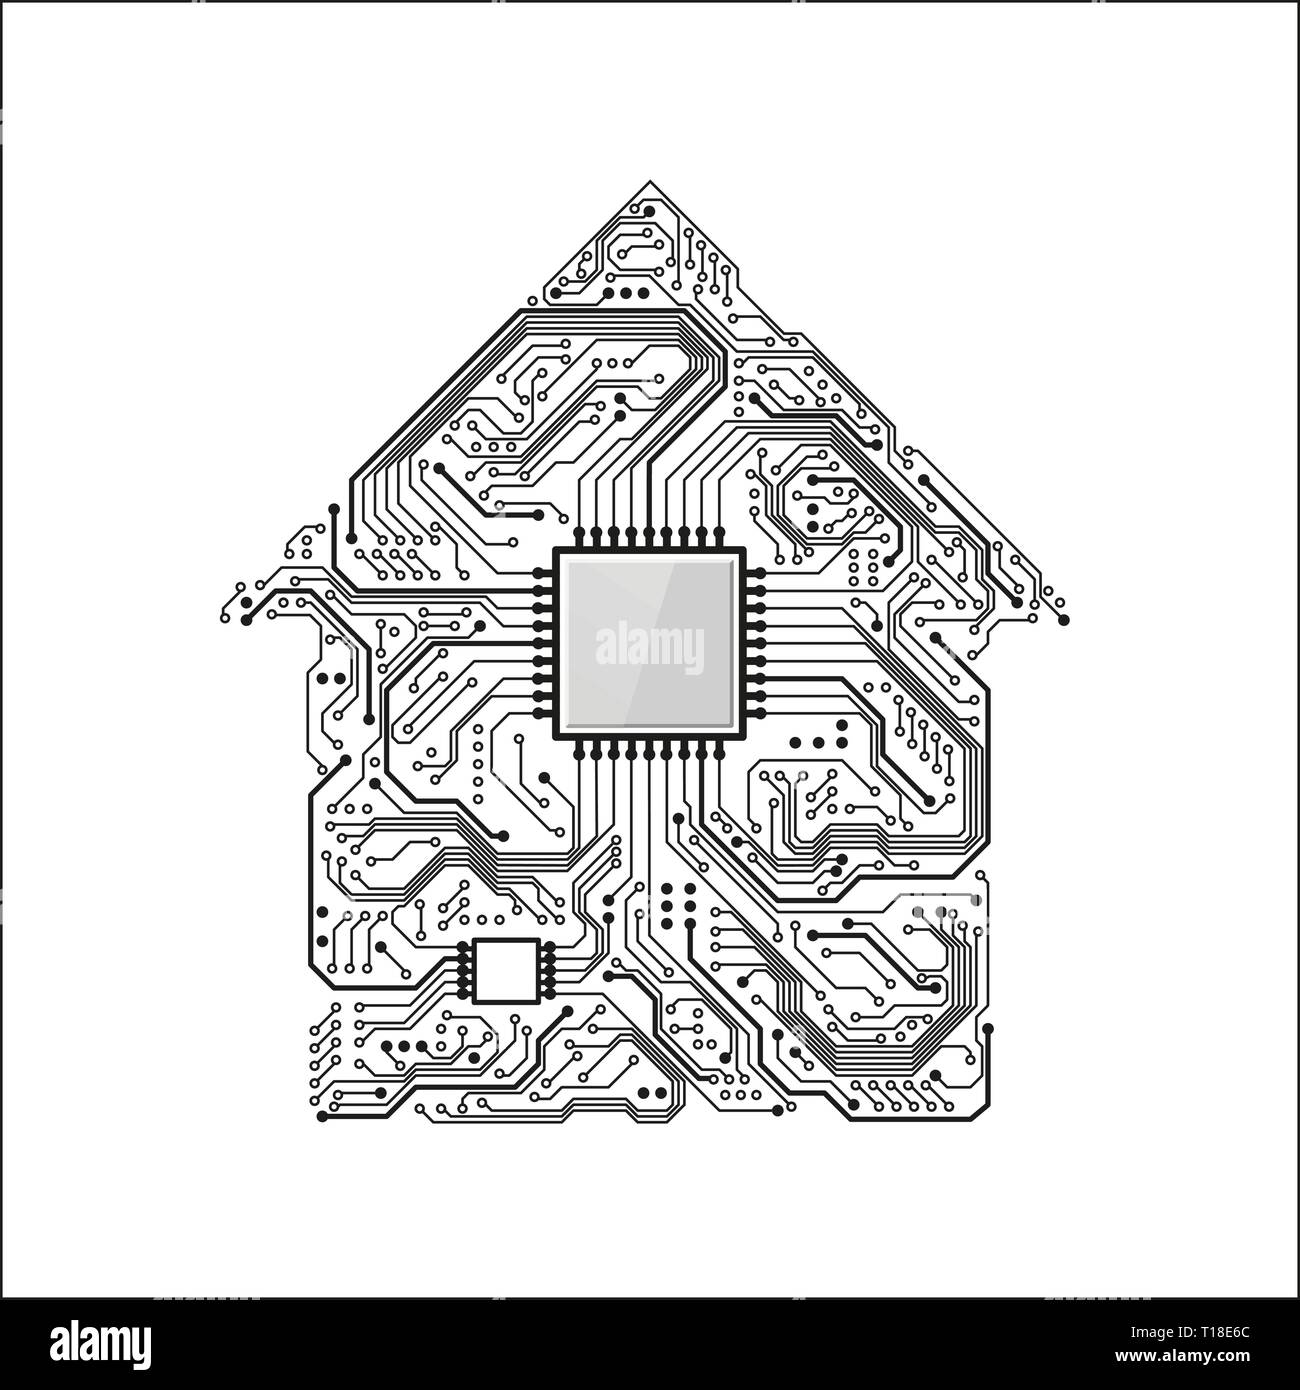 Smart Home Konzept. Stromkreis Haus mit CPU. Technik der Zukunft Hintergrund. Vector Illustration Stock Vektor